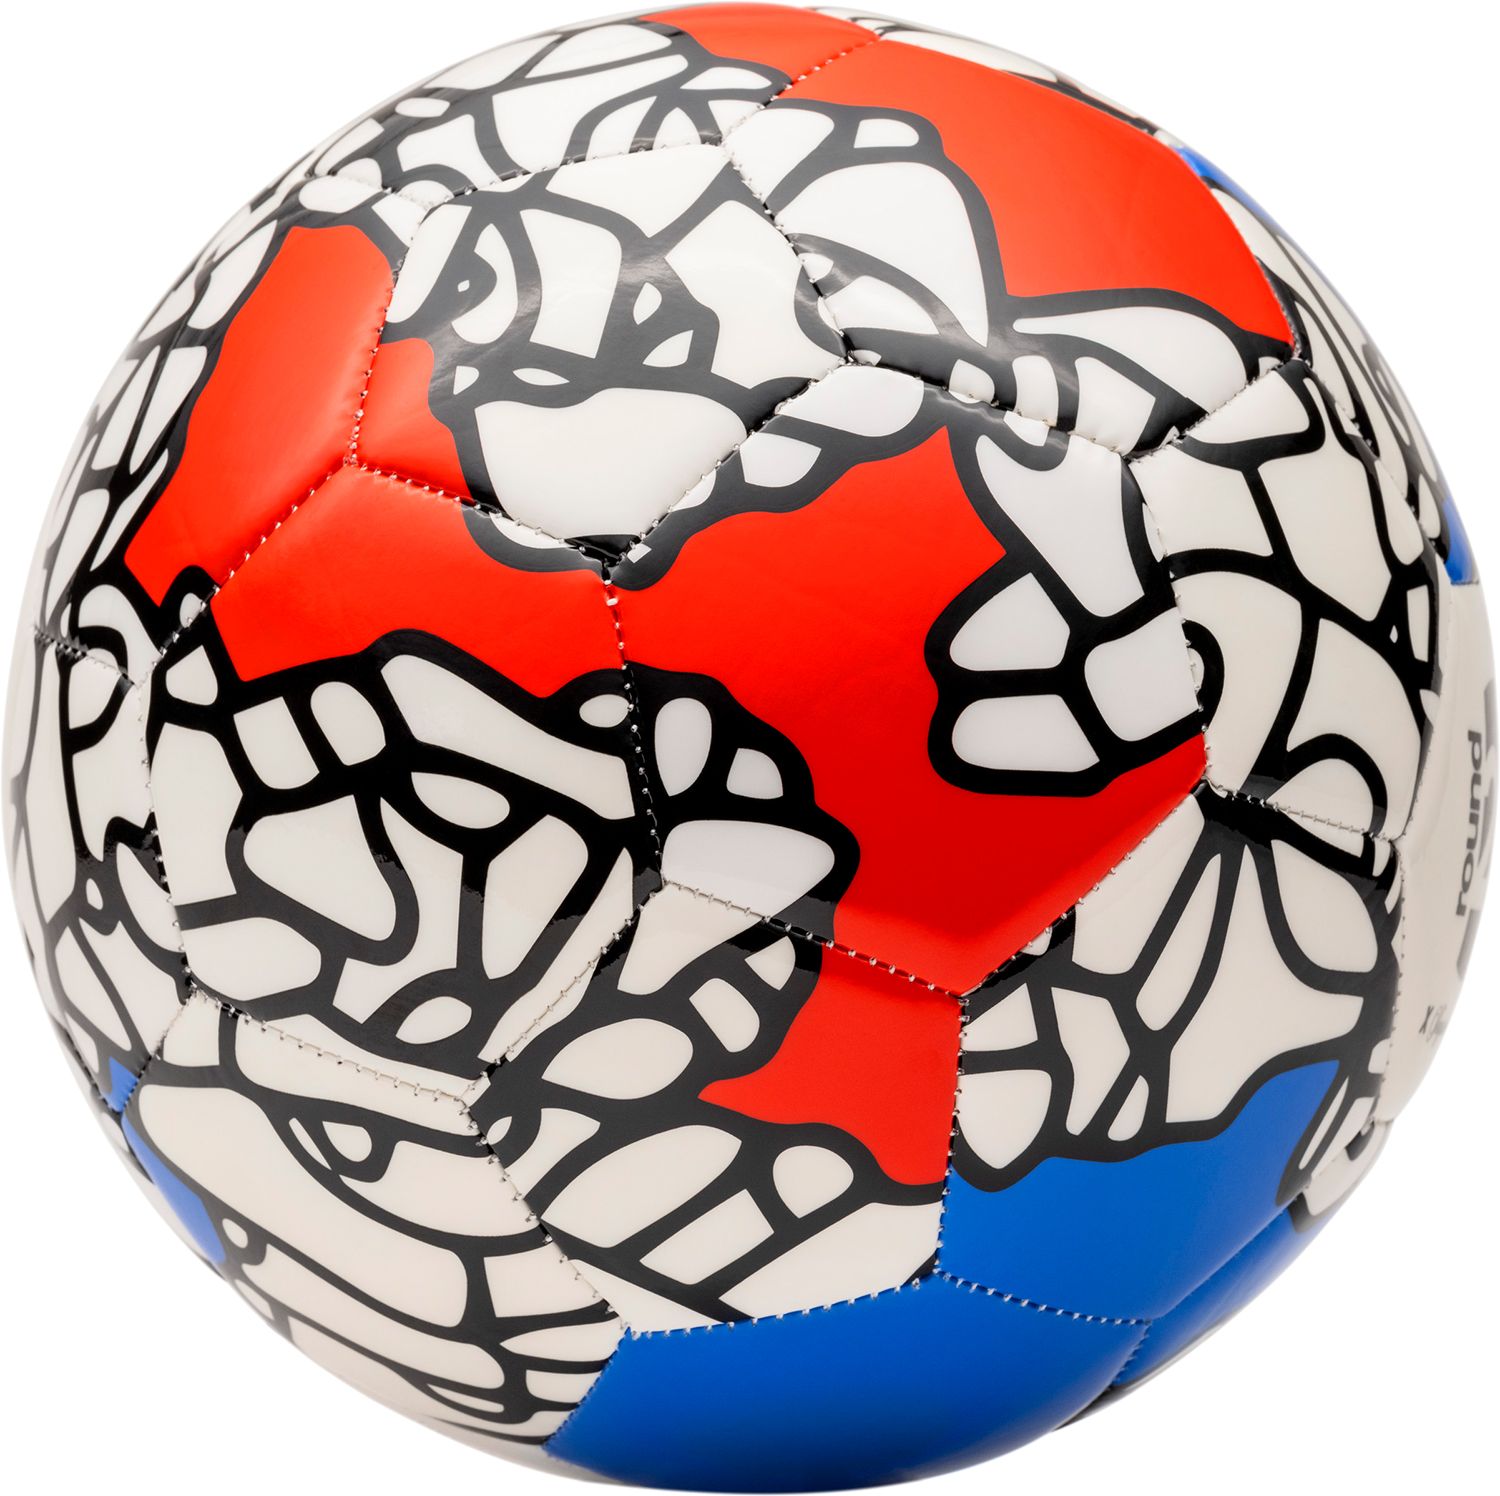 round21 Passport Series Tribute to USA Soccer Ball